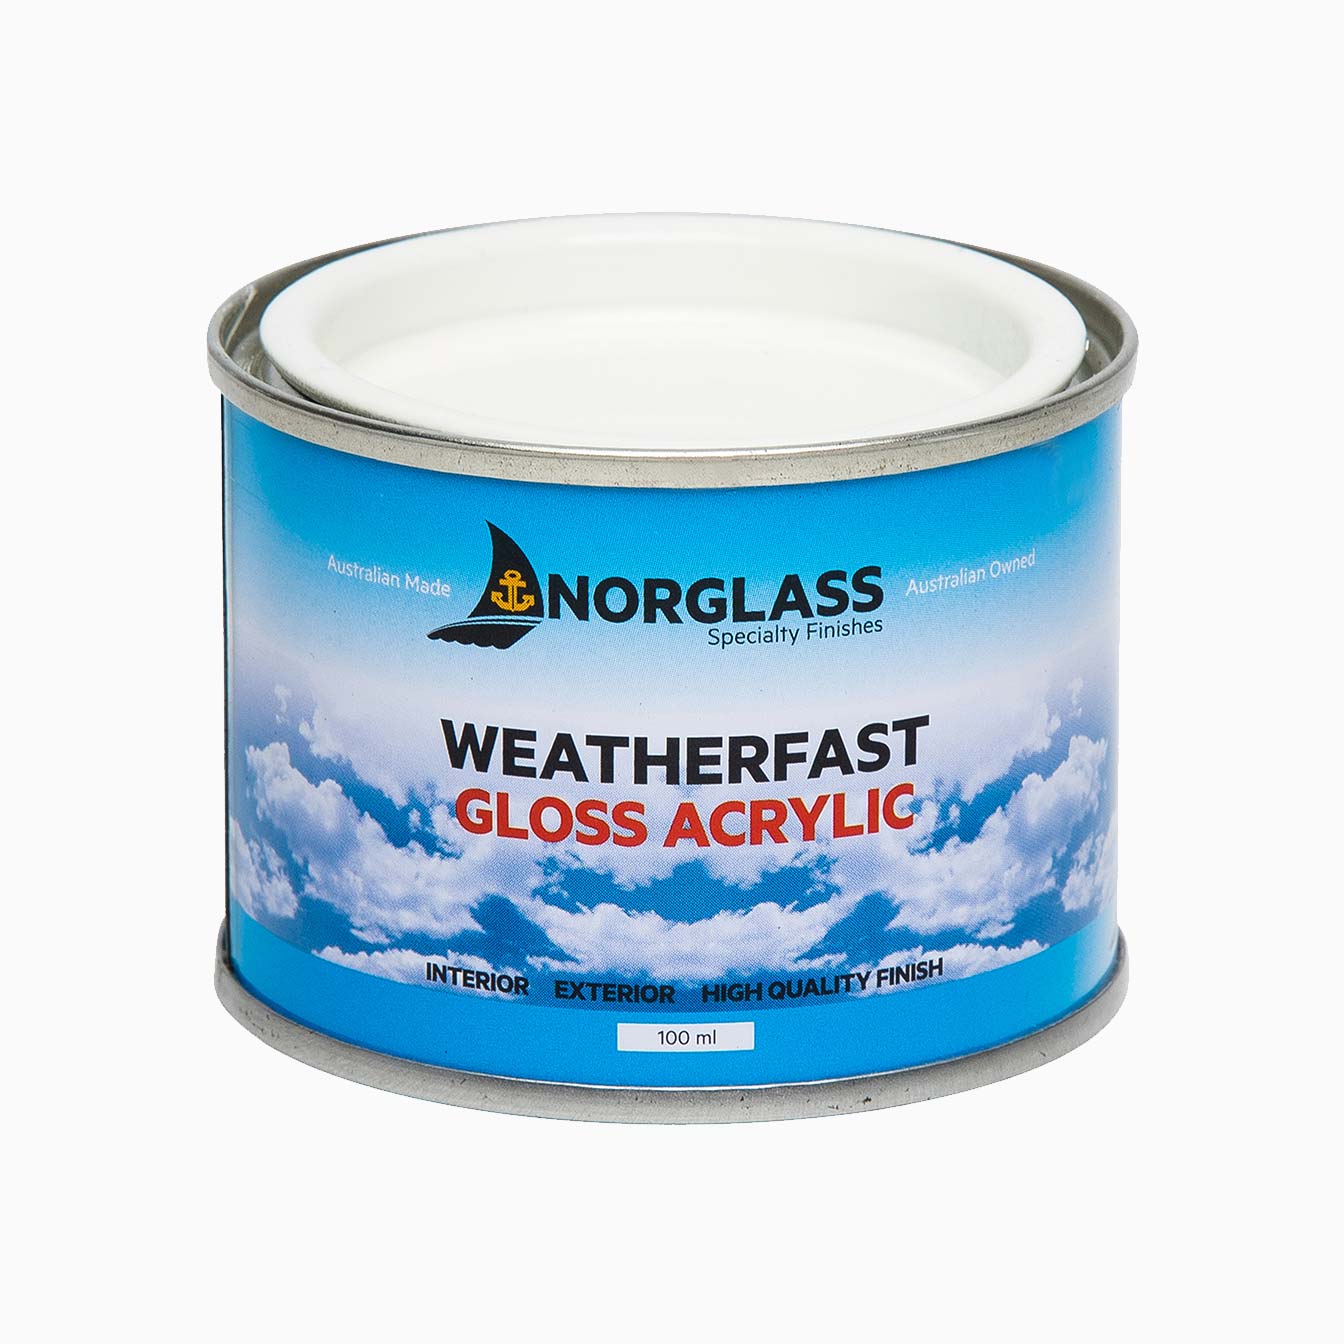 Weatherfast Gloss Acrylic